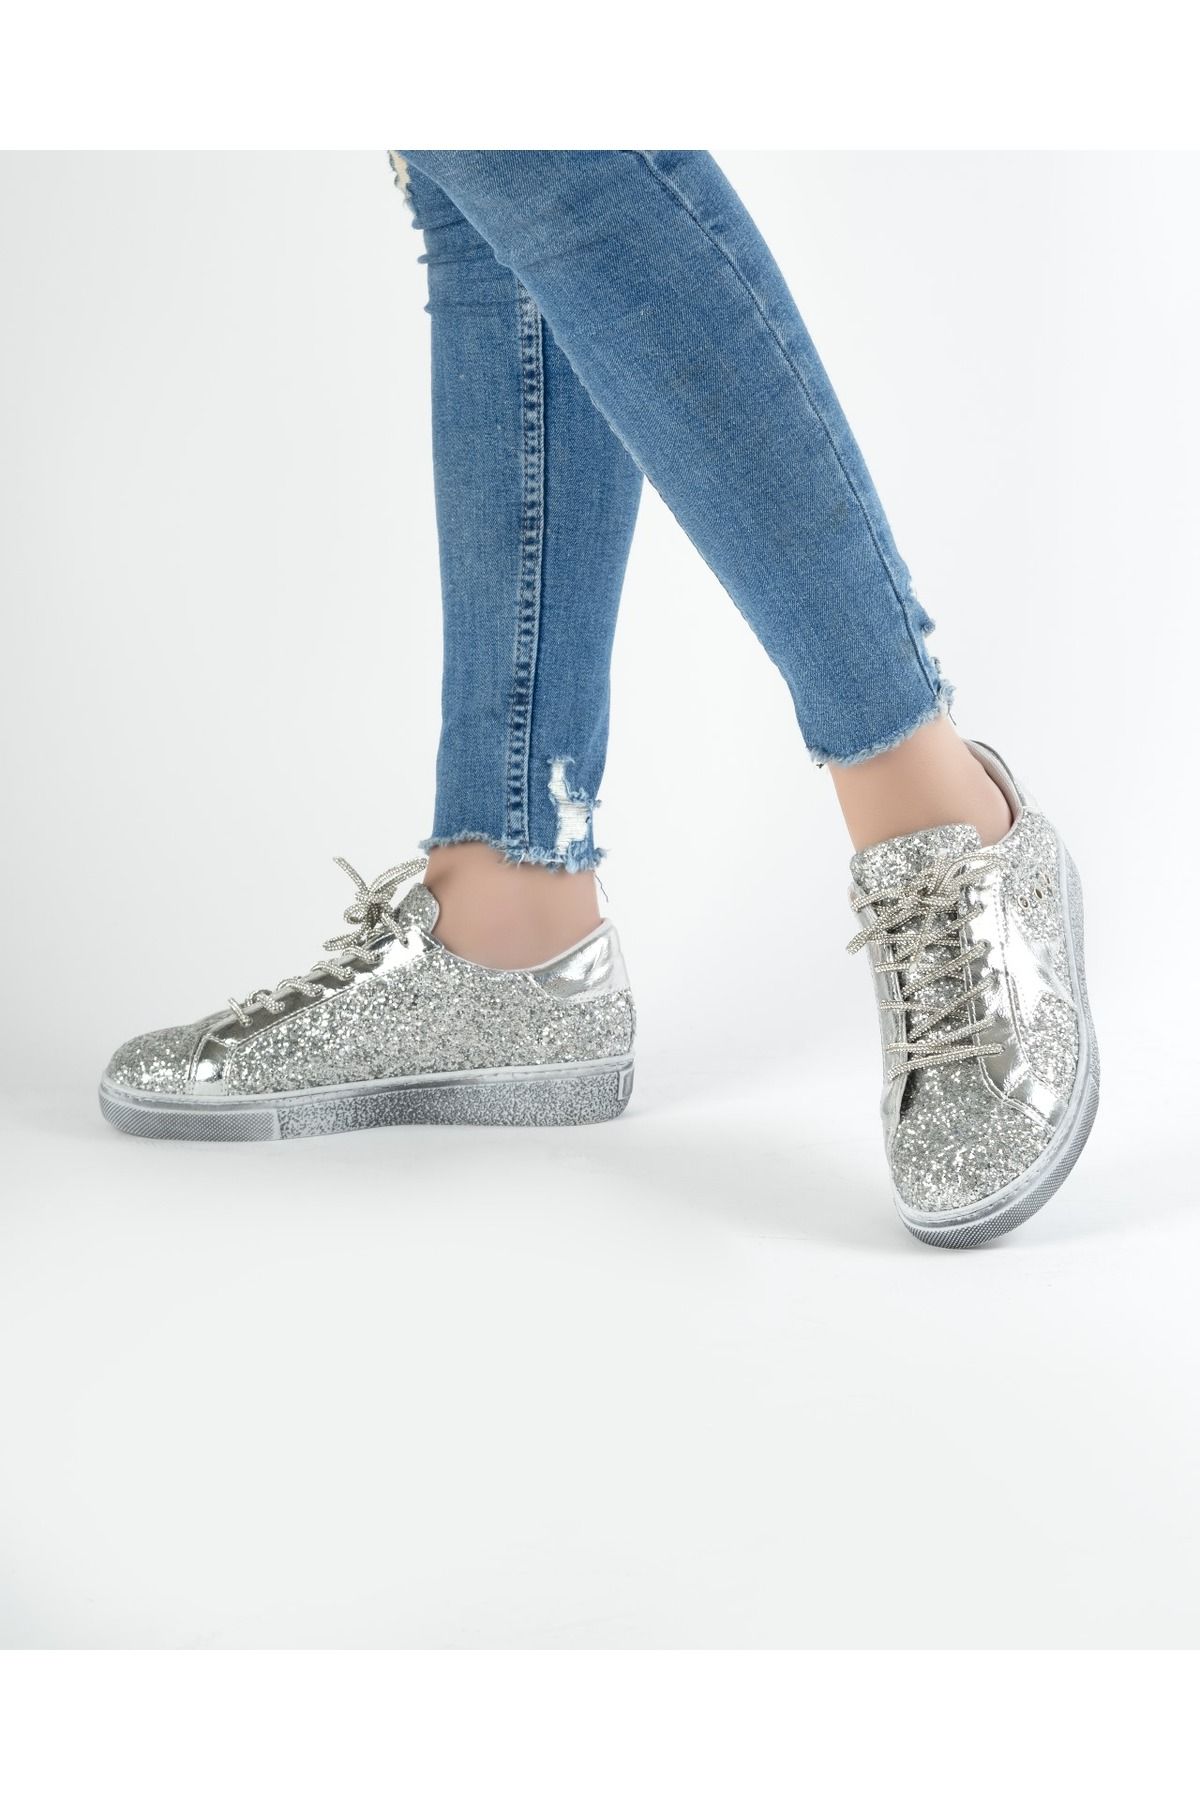 waisi shoes Star Gümüş Simli Ayakkabı | Kadın Pullu gümüş Modalı Spor Ayakkabıları | Parıltılı Yıldız Ayakkabı